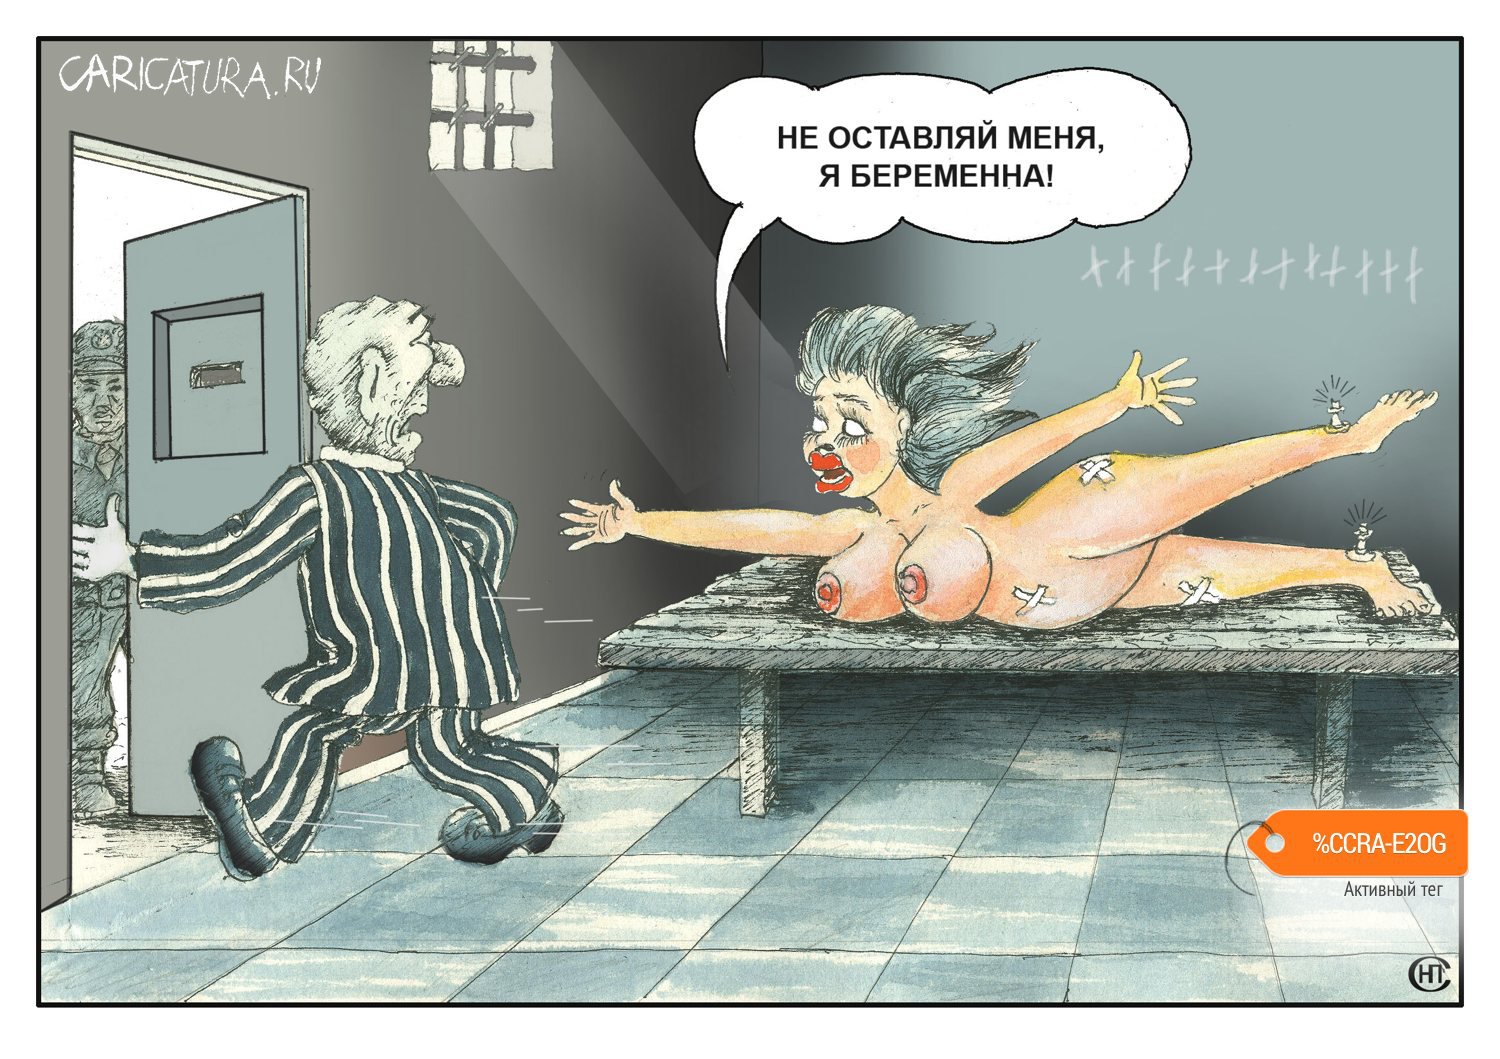 Карикатура "На волю с чистой совестью", Николай Свириденко